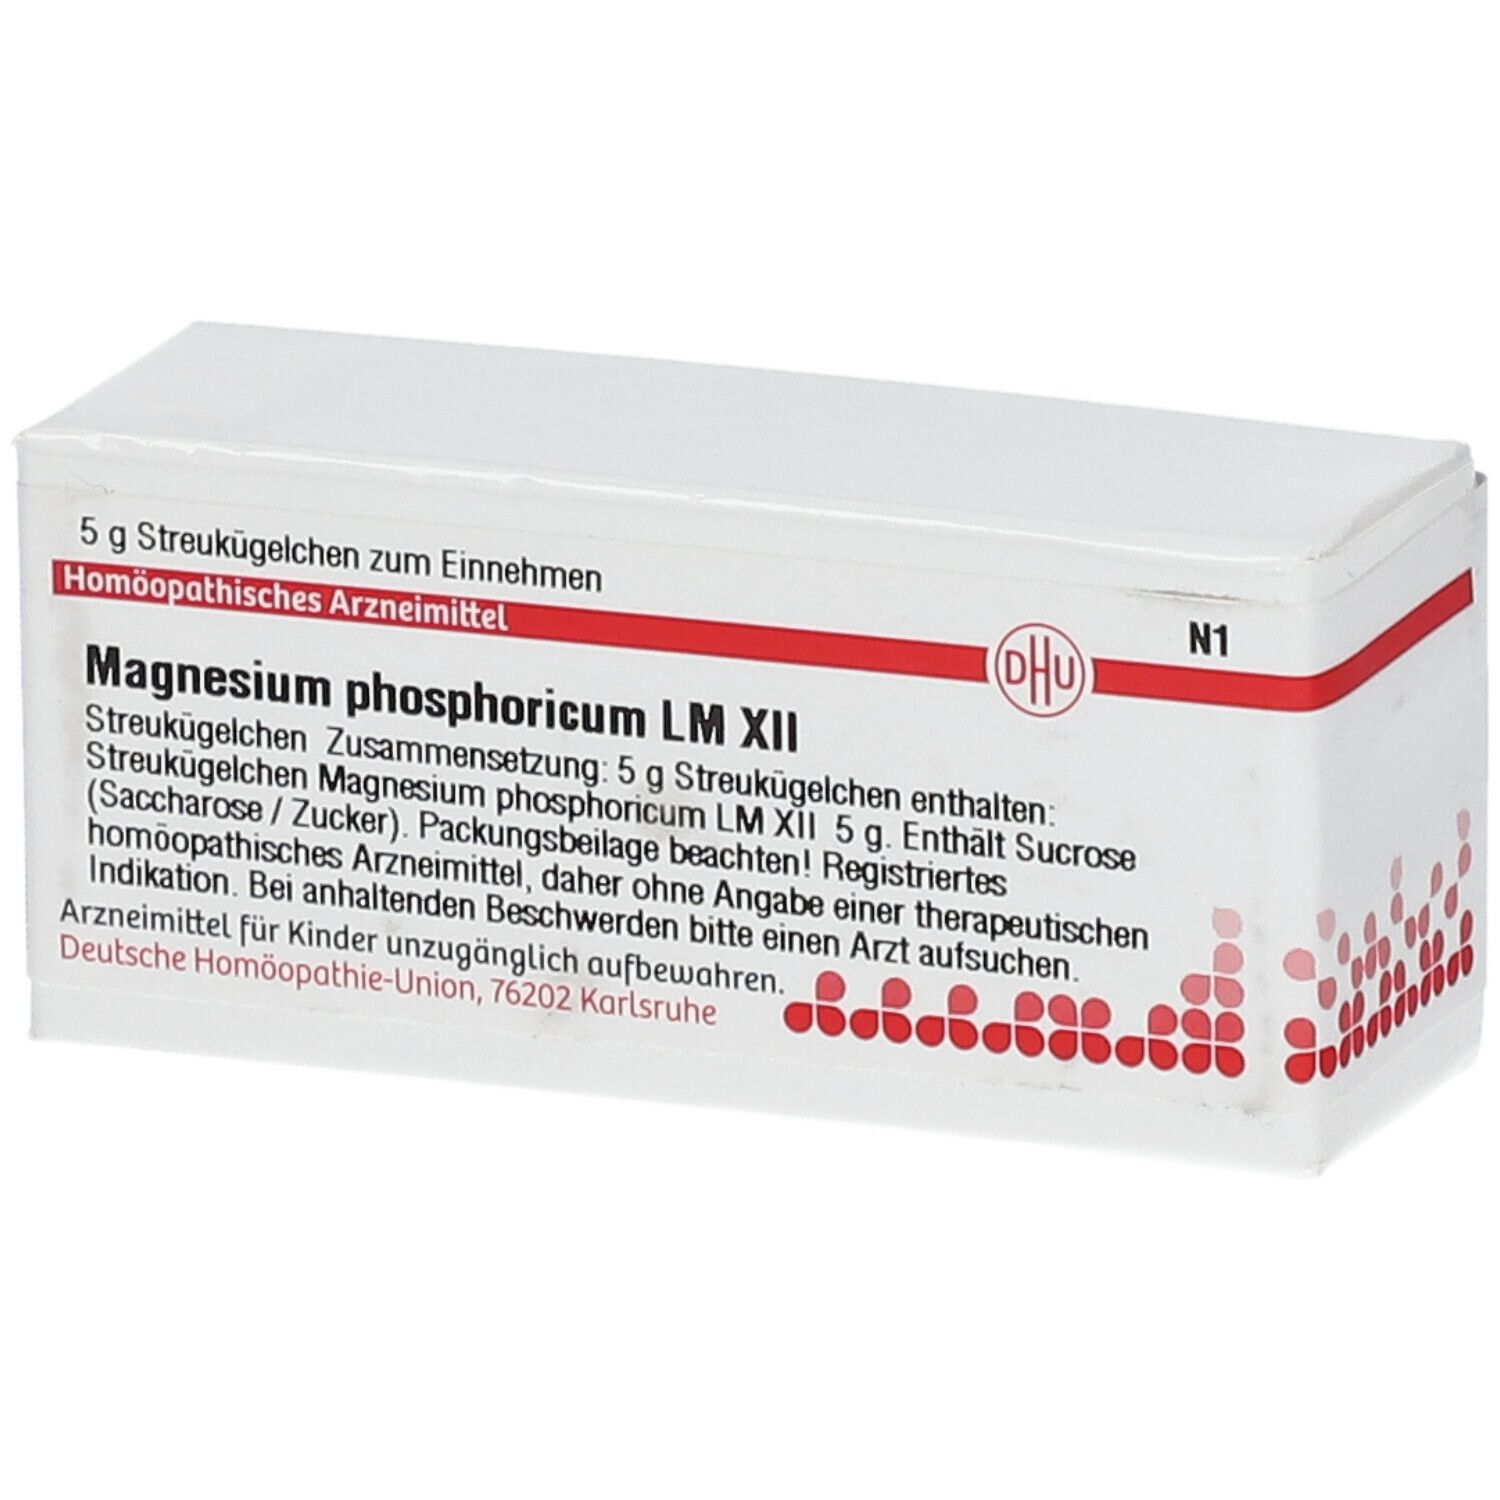 DHU Magnesium Phosphoricum LM XII